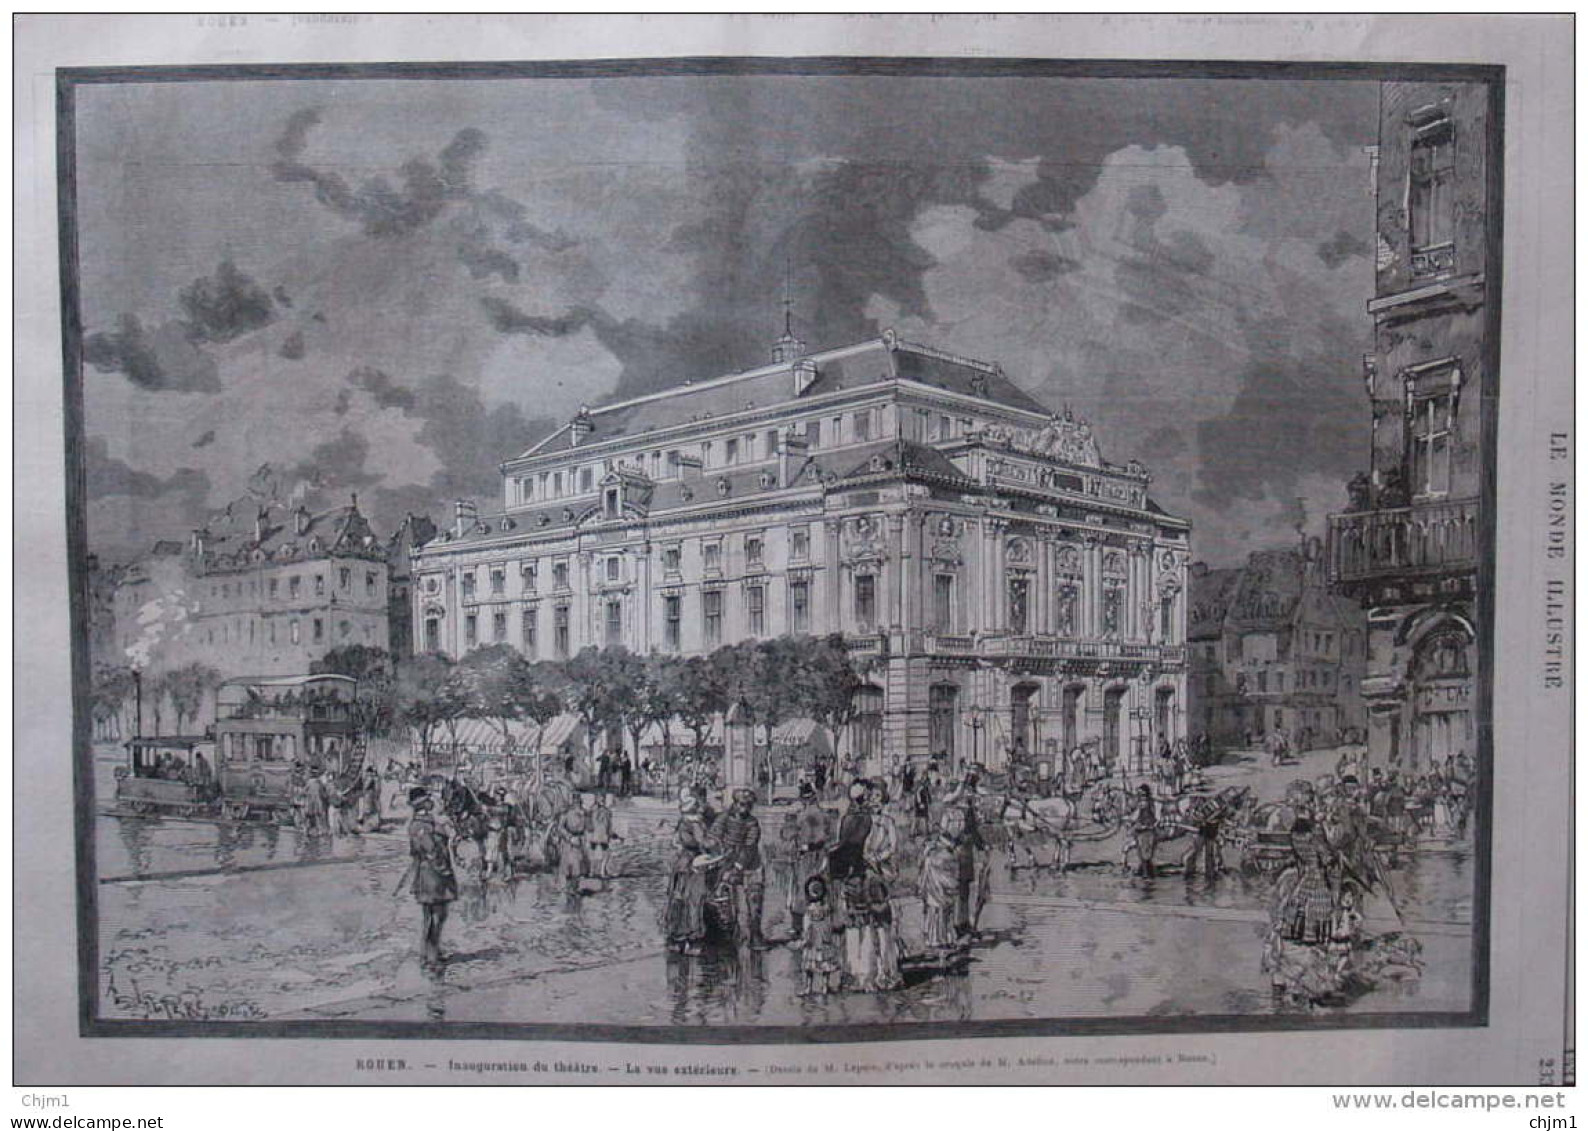 Rouen - Inauguration De Théâtre - La Vue Extérieure - Page Original 1882 - Documents Historiques